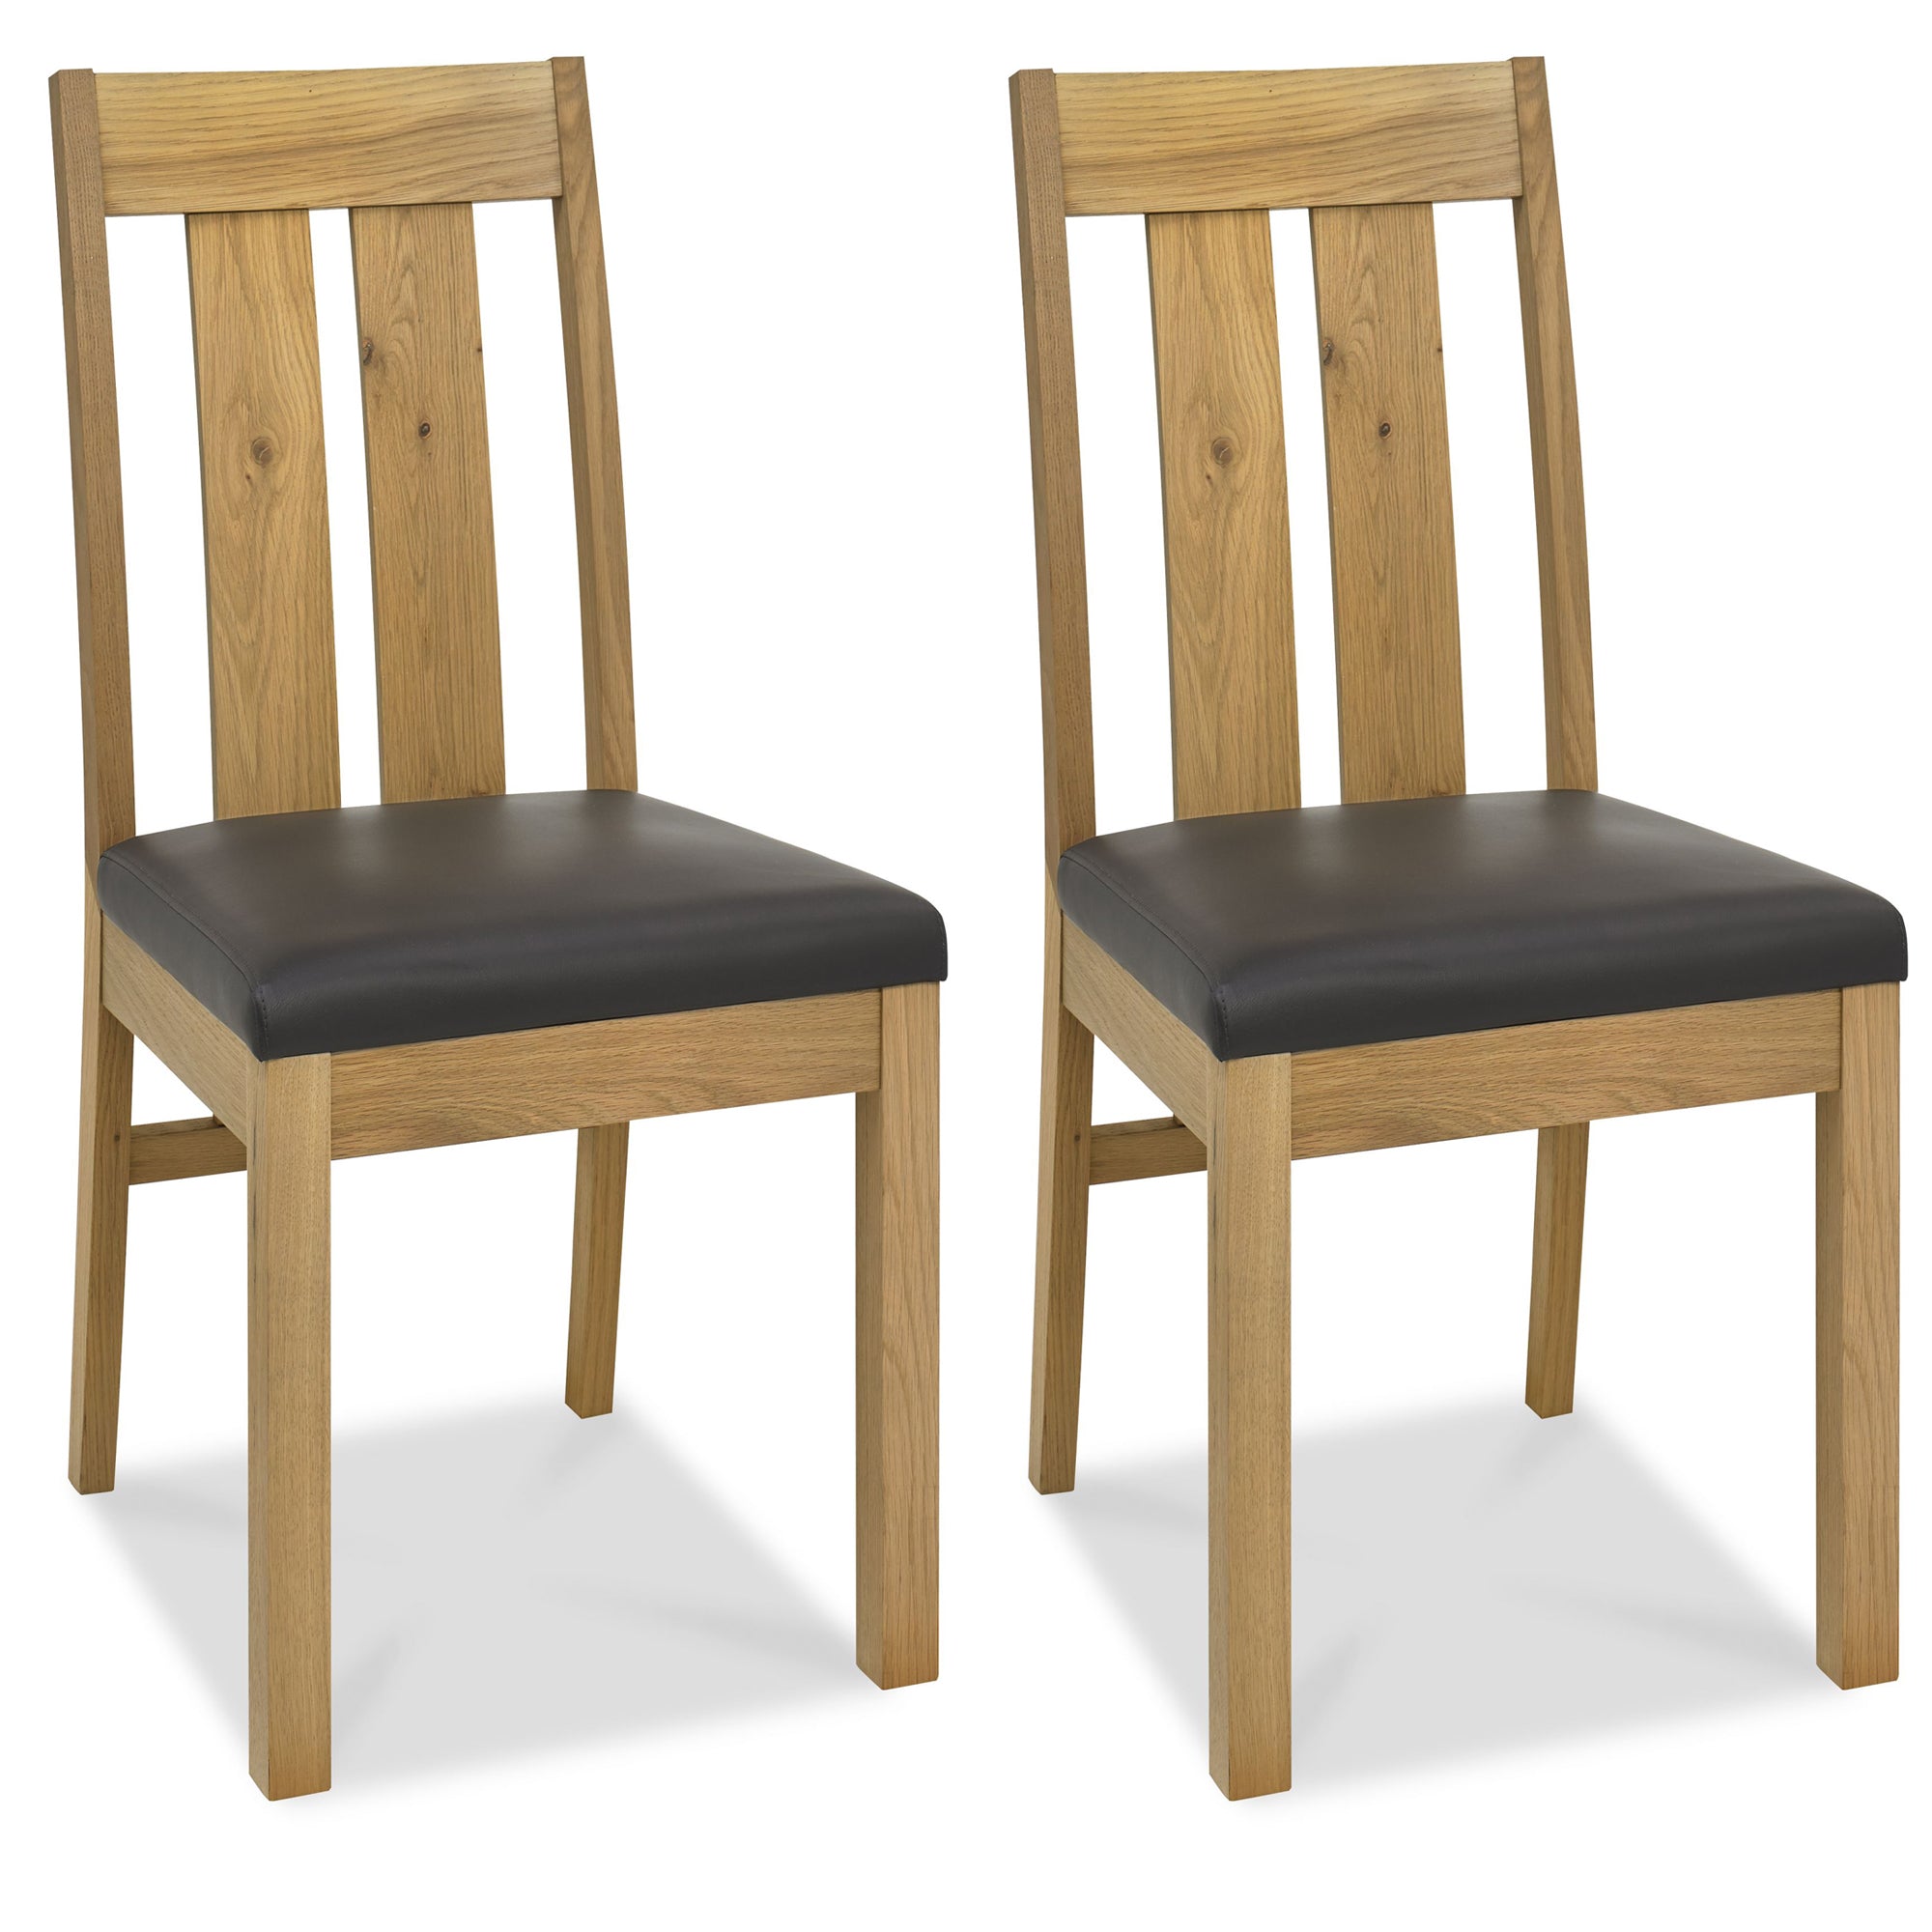 Turner Light Oak Slatted Chair (Pair)